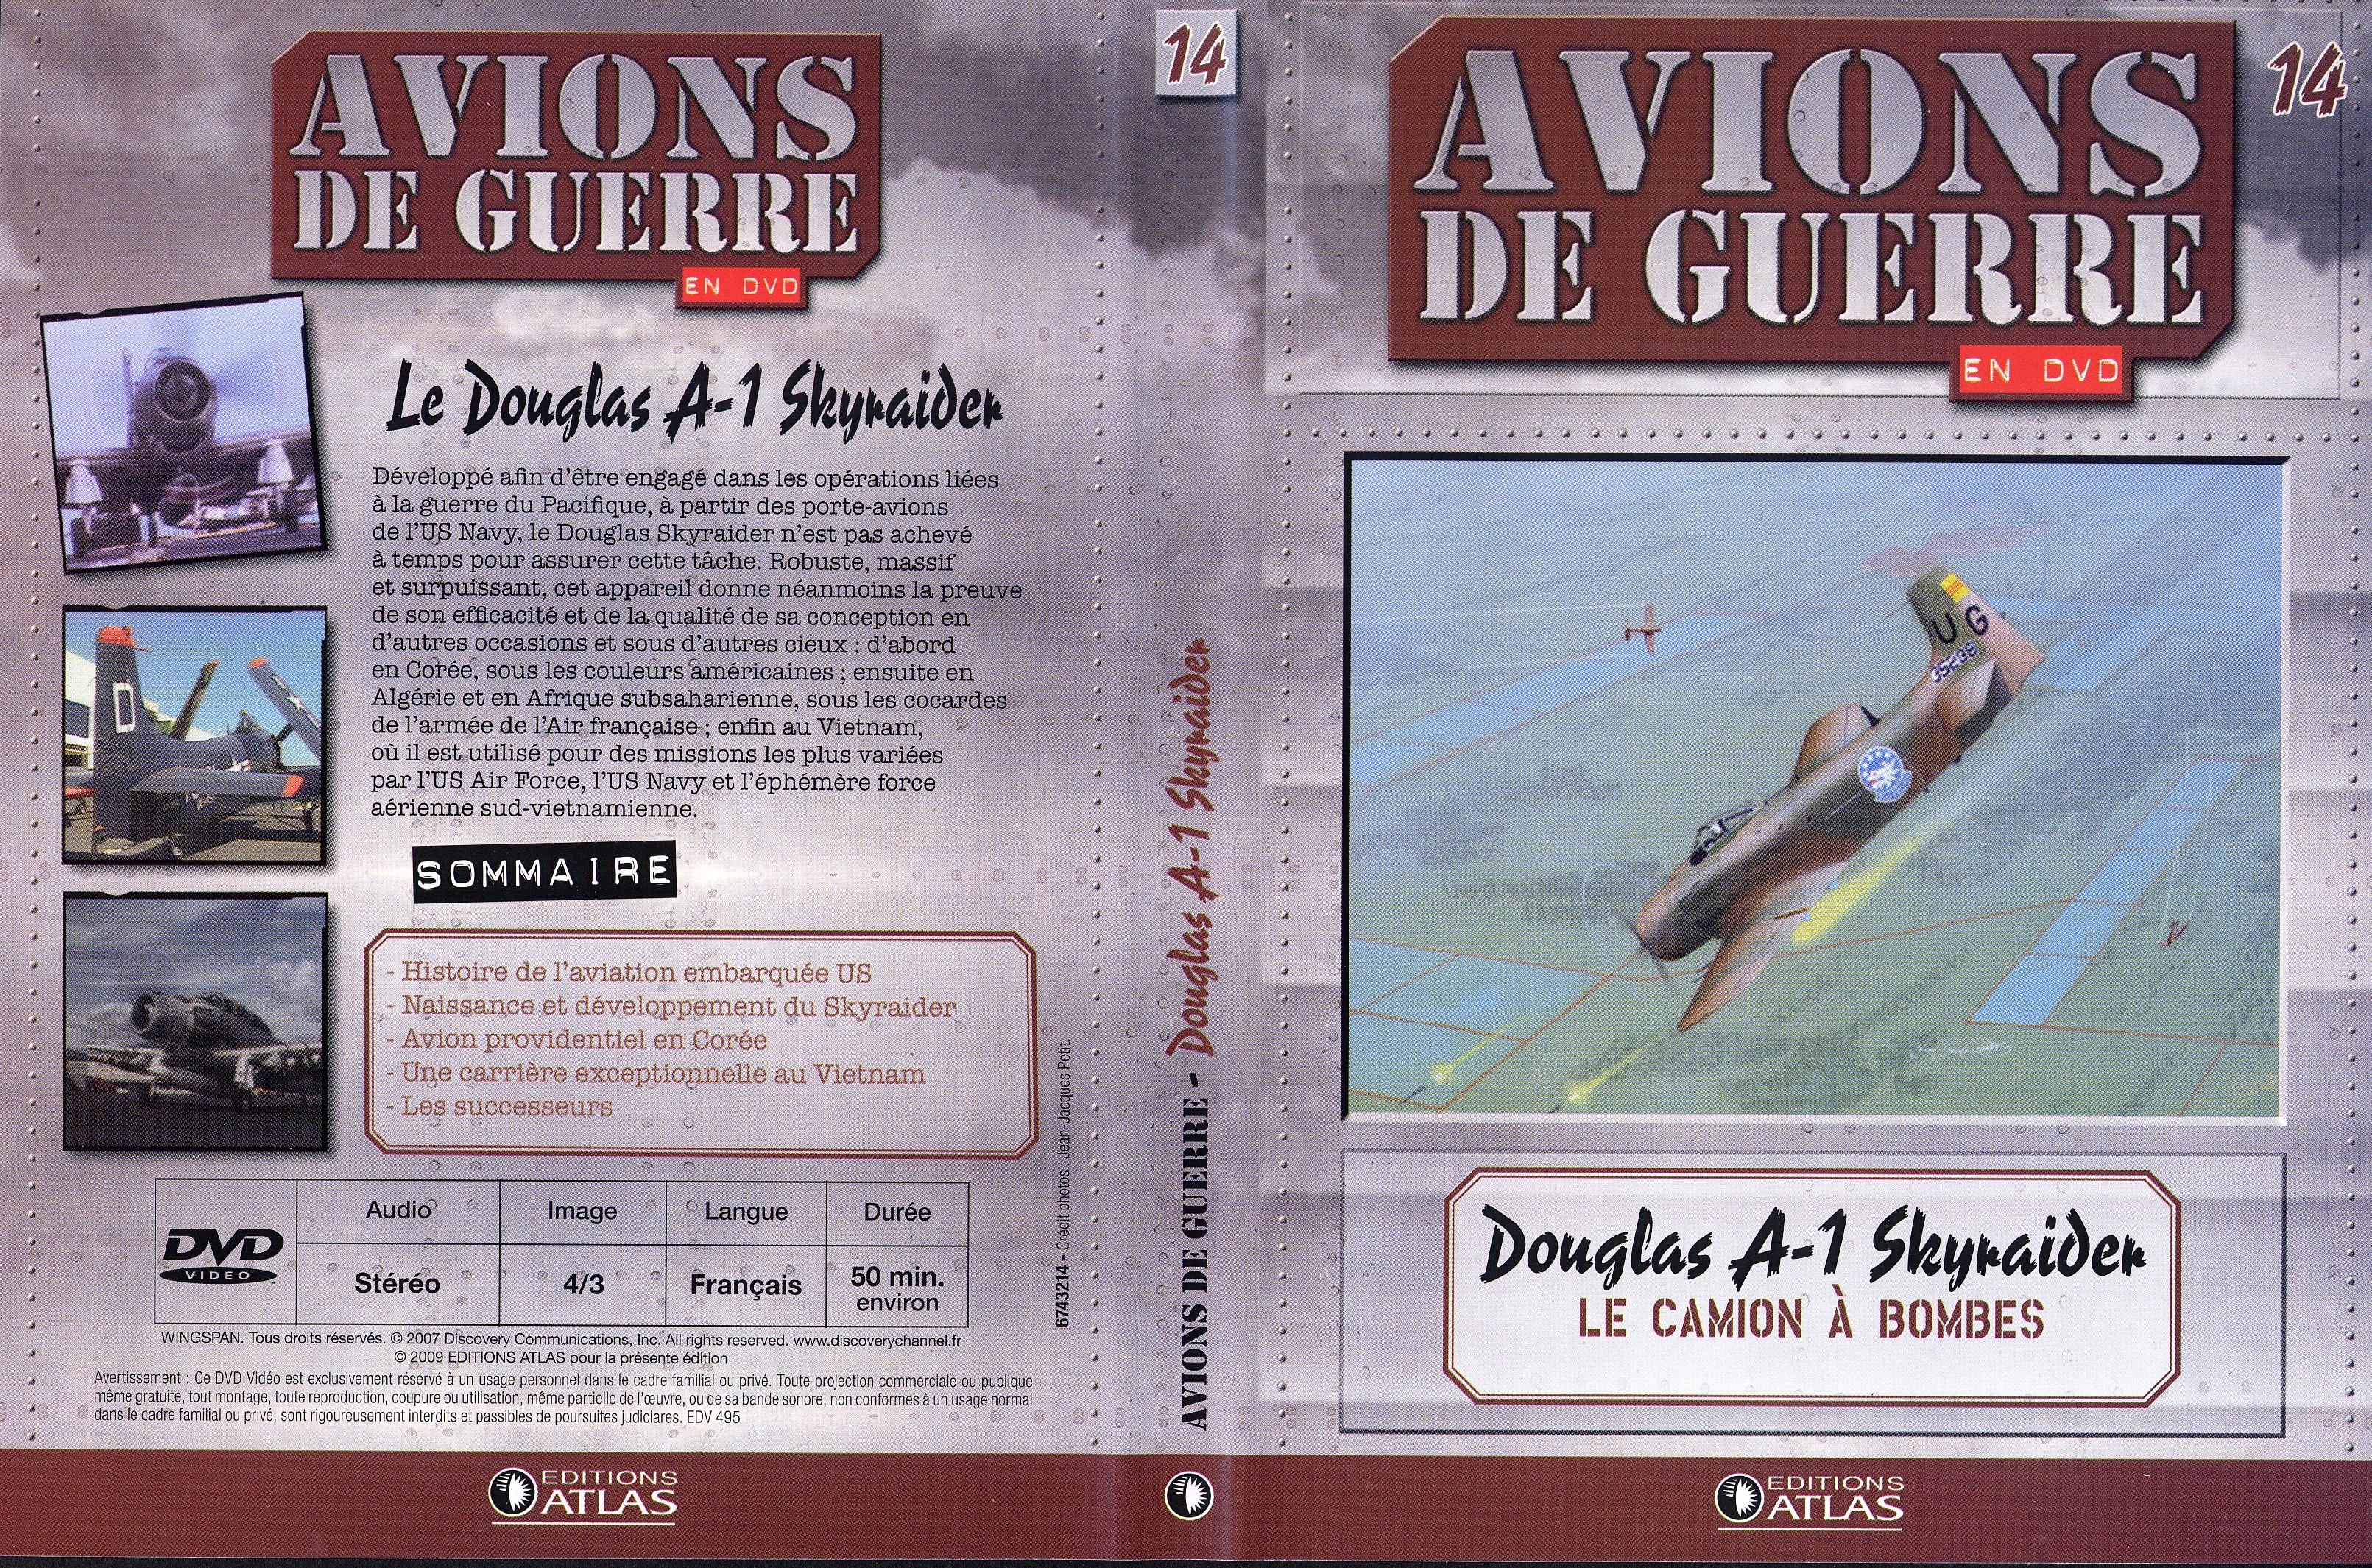 Jaquette DVD Avions de guerre en DVD vol 14